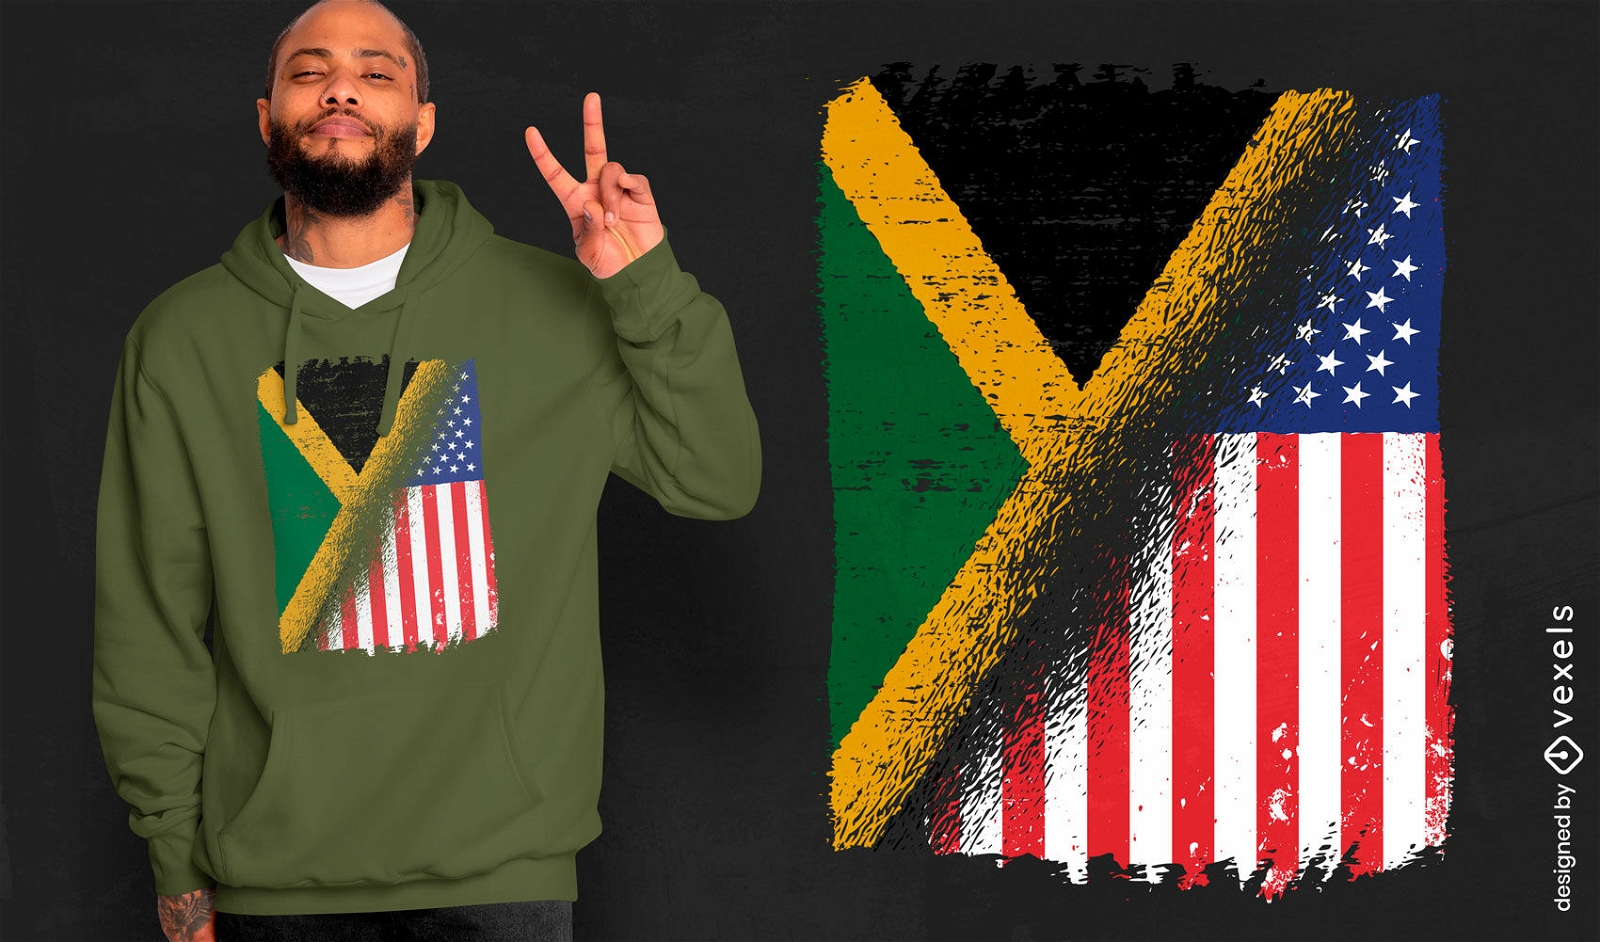 Dise?o de camiseta con banderas de Estados Unidos y Jamaica.